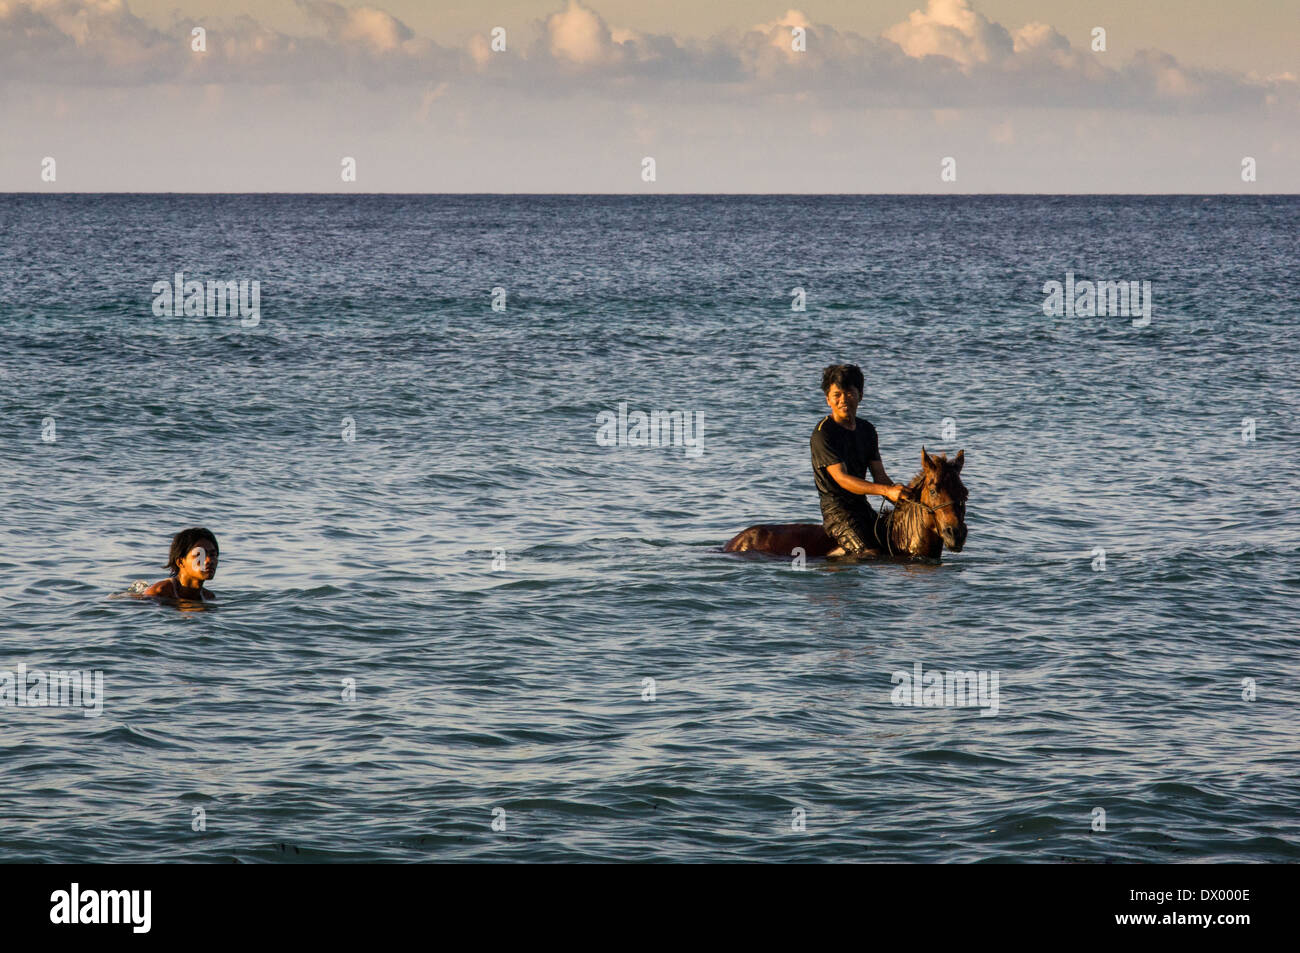 local man with horse swimming in the sea, Gili Trawangan, Gili islands, Indonesia, Asia Stock Photo